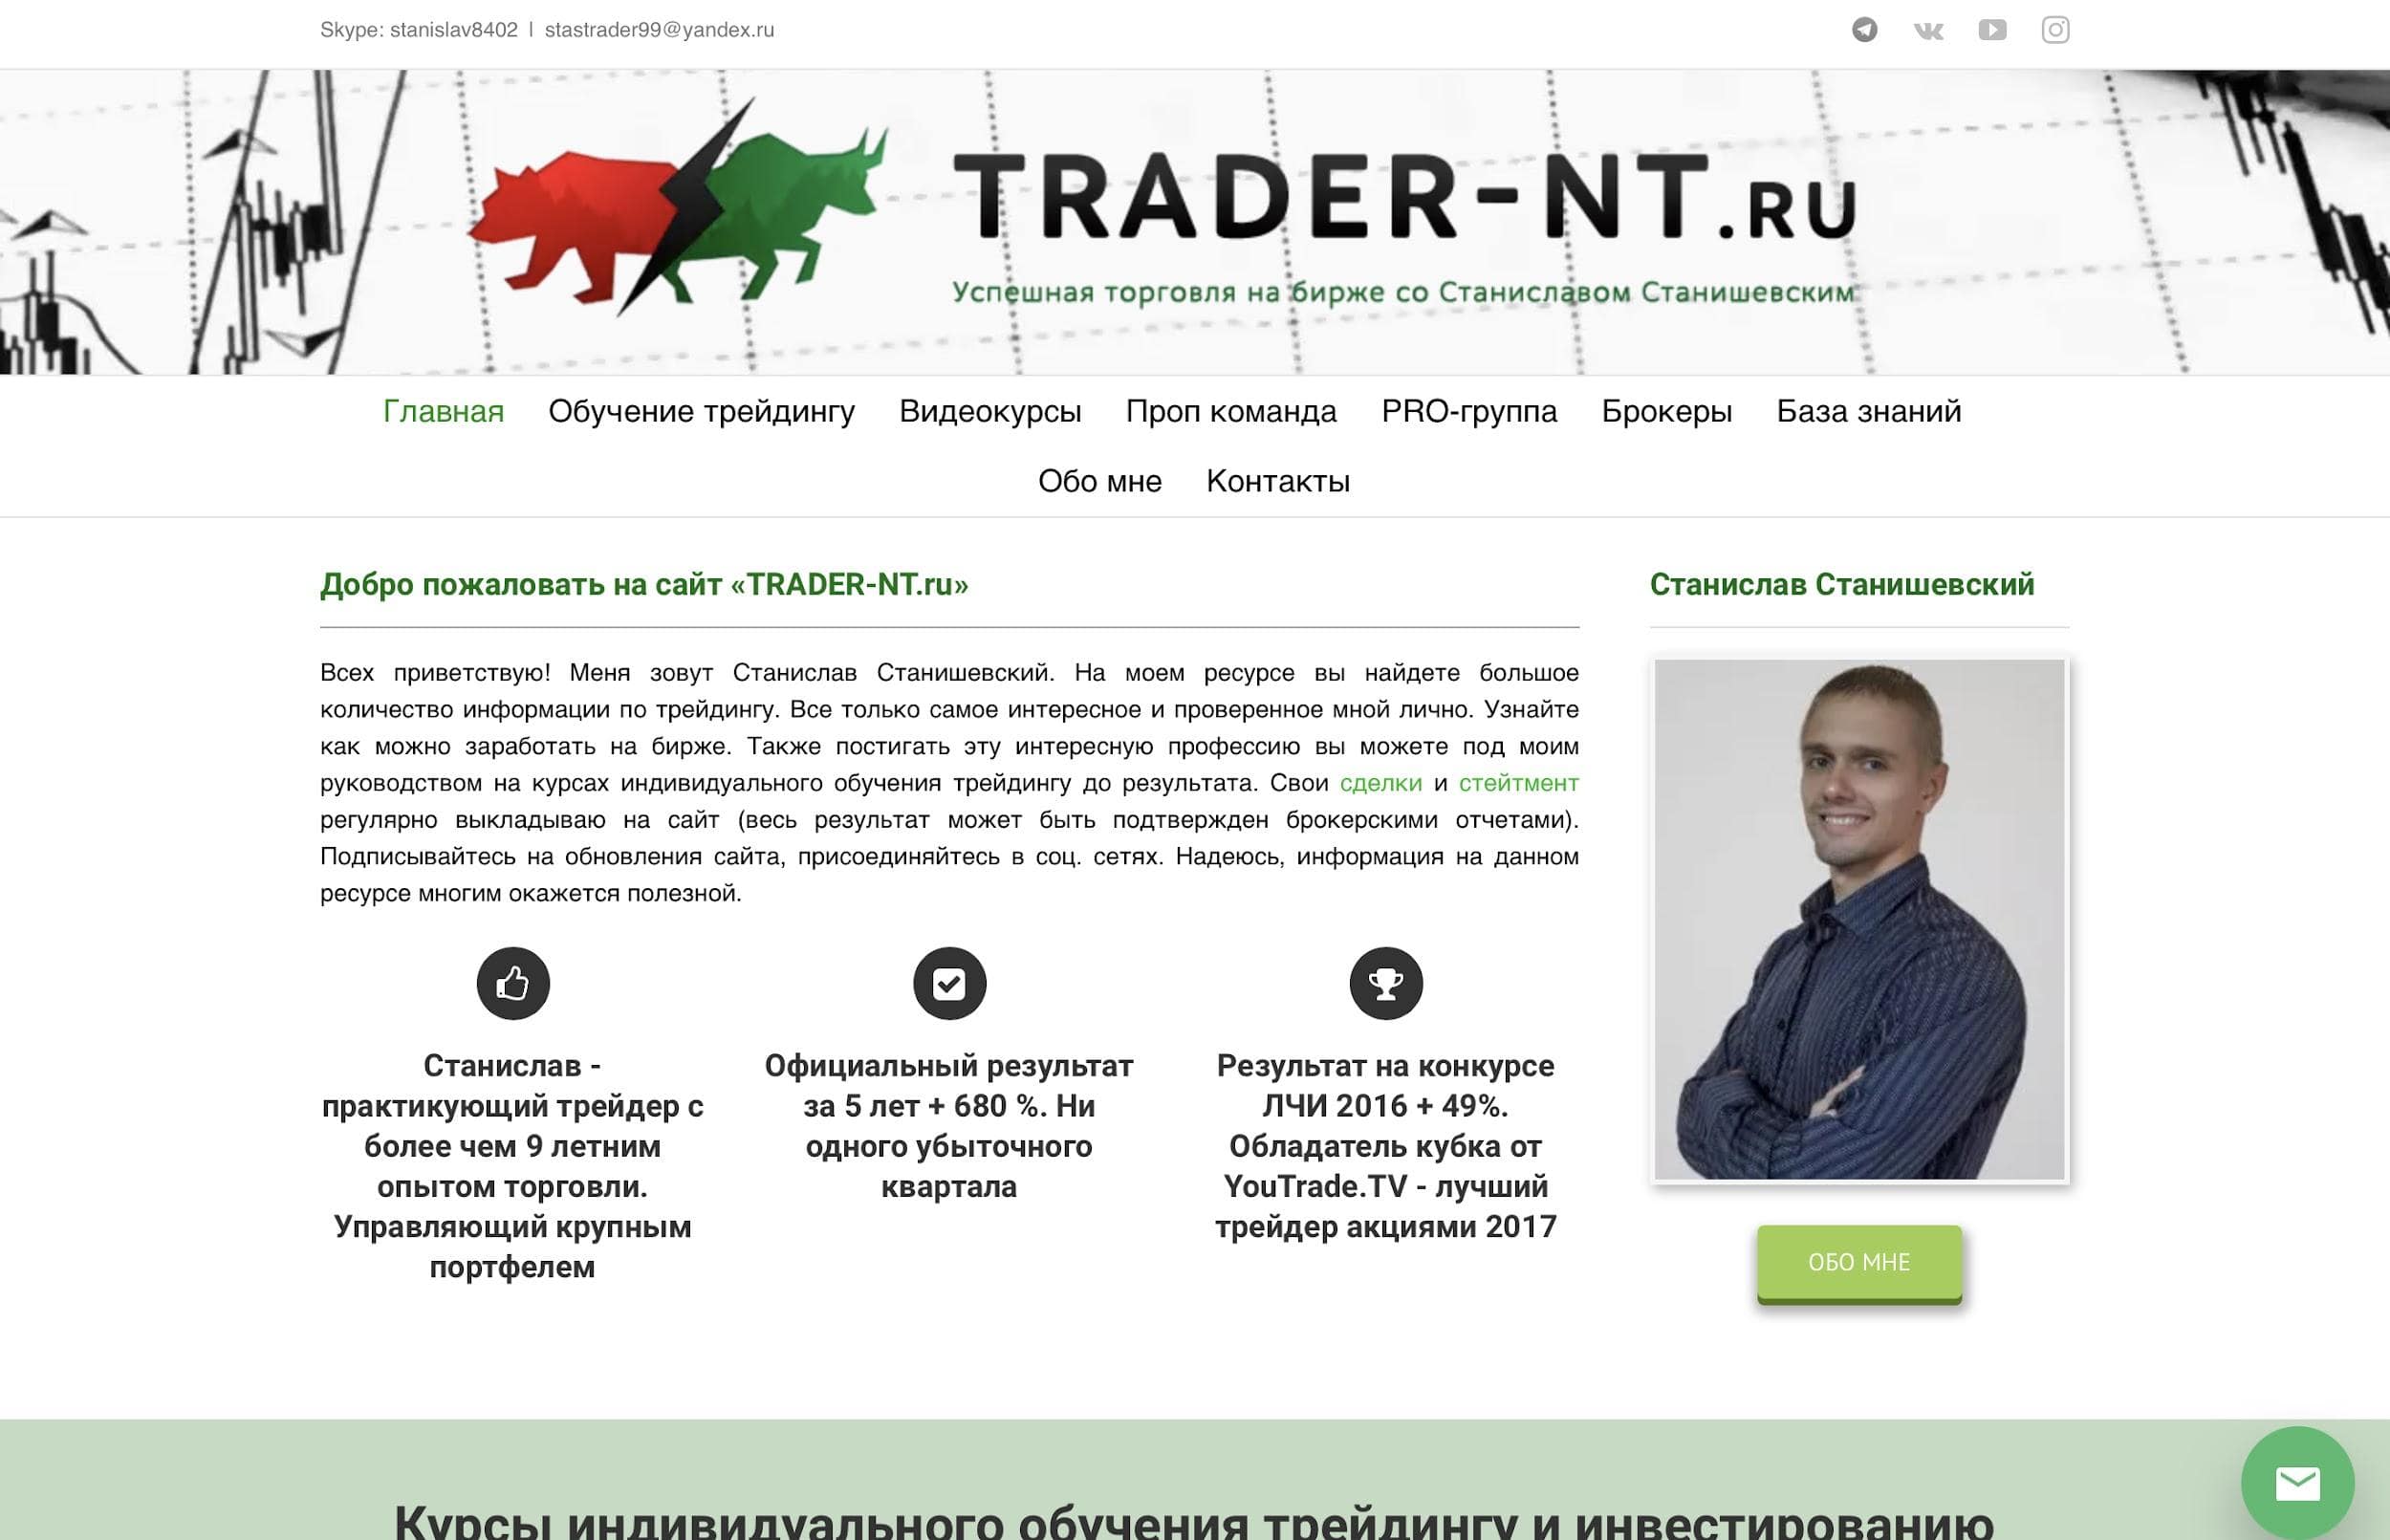 Обучение трейдингу и инвестированию от Станислава Сташевского - сайт